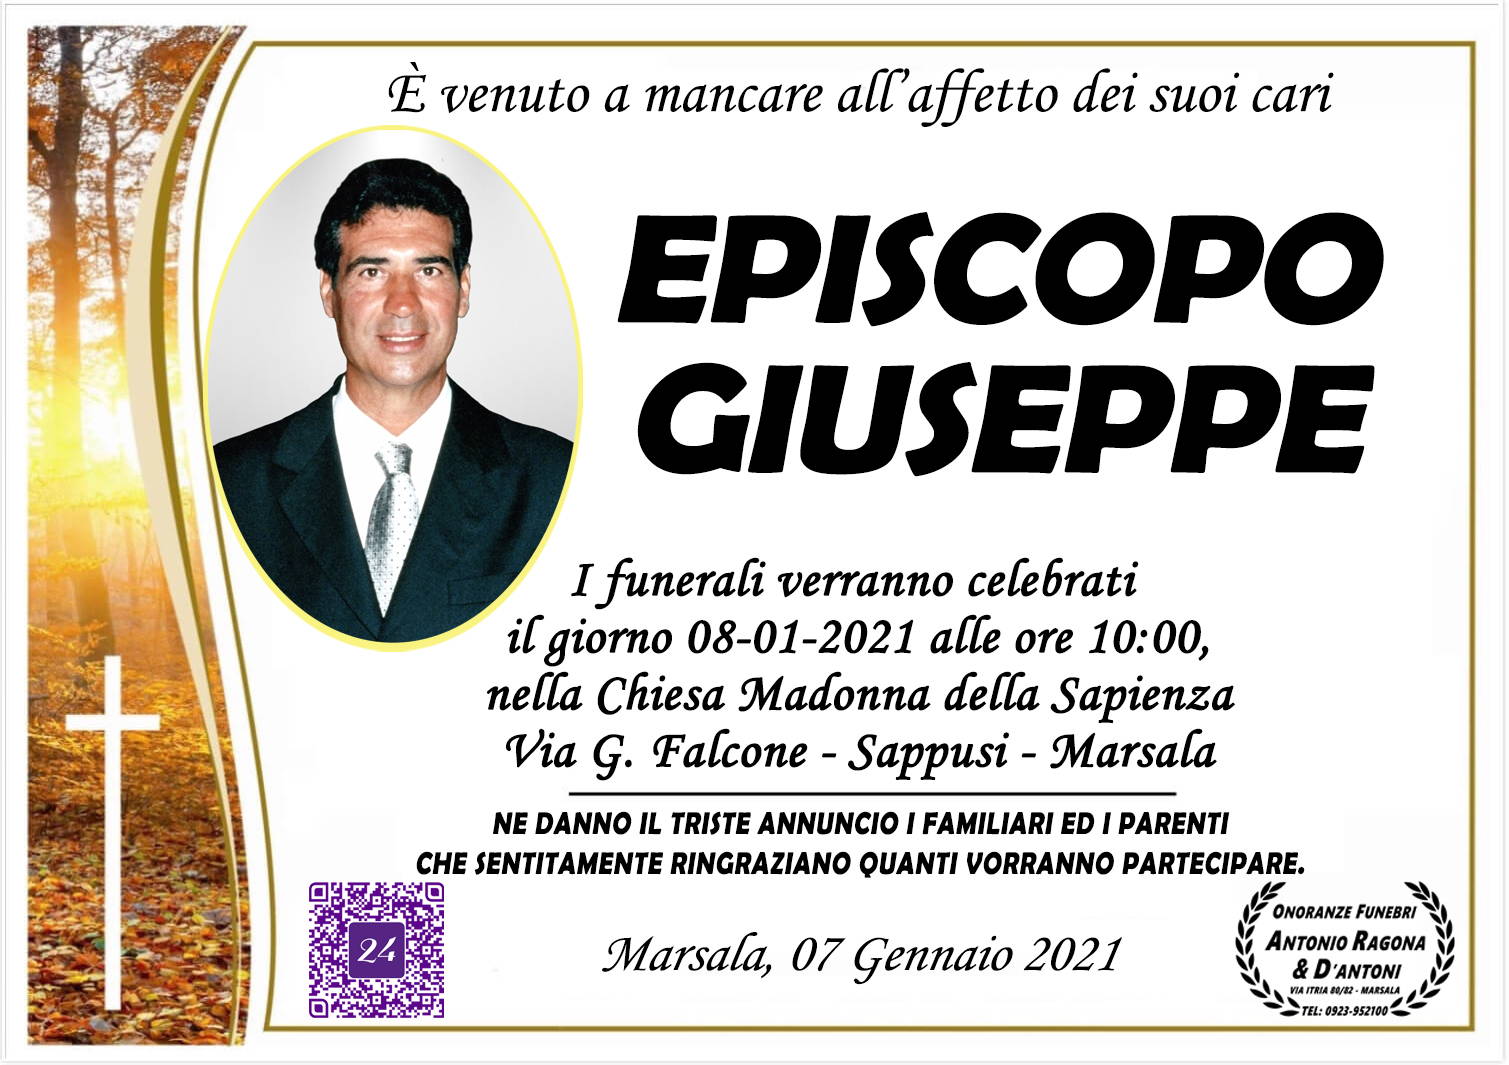 Giuseppe Episcopo